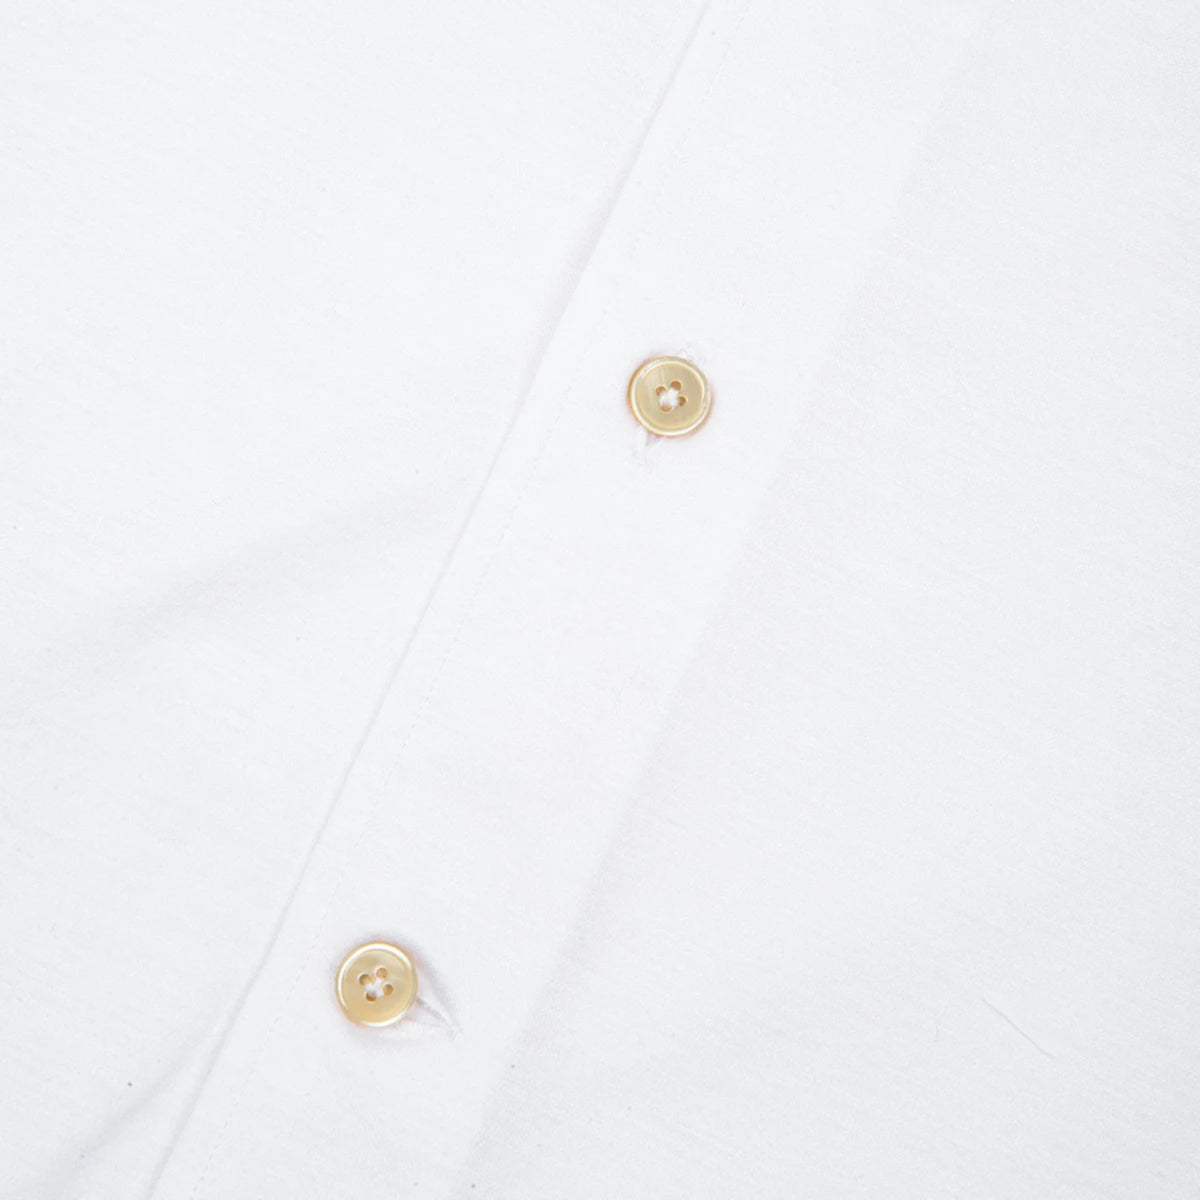 White Fine Jersey Shirt - Regular Fit